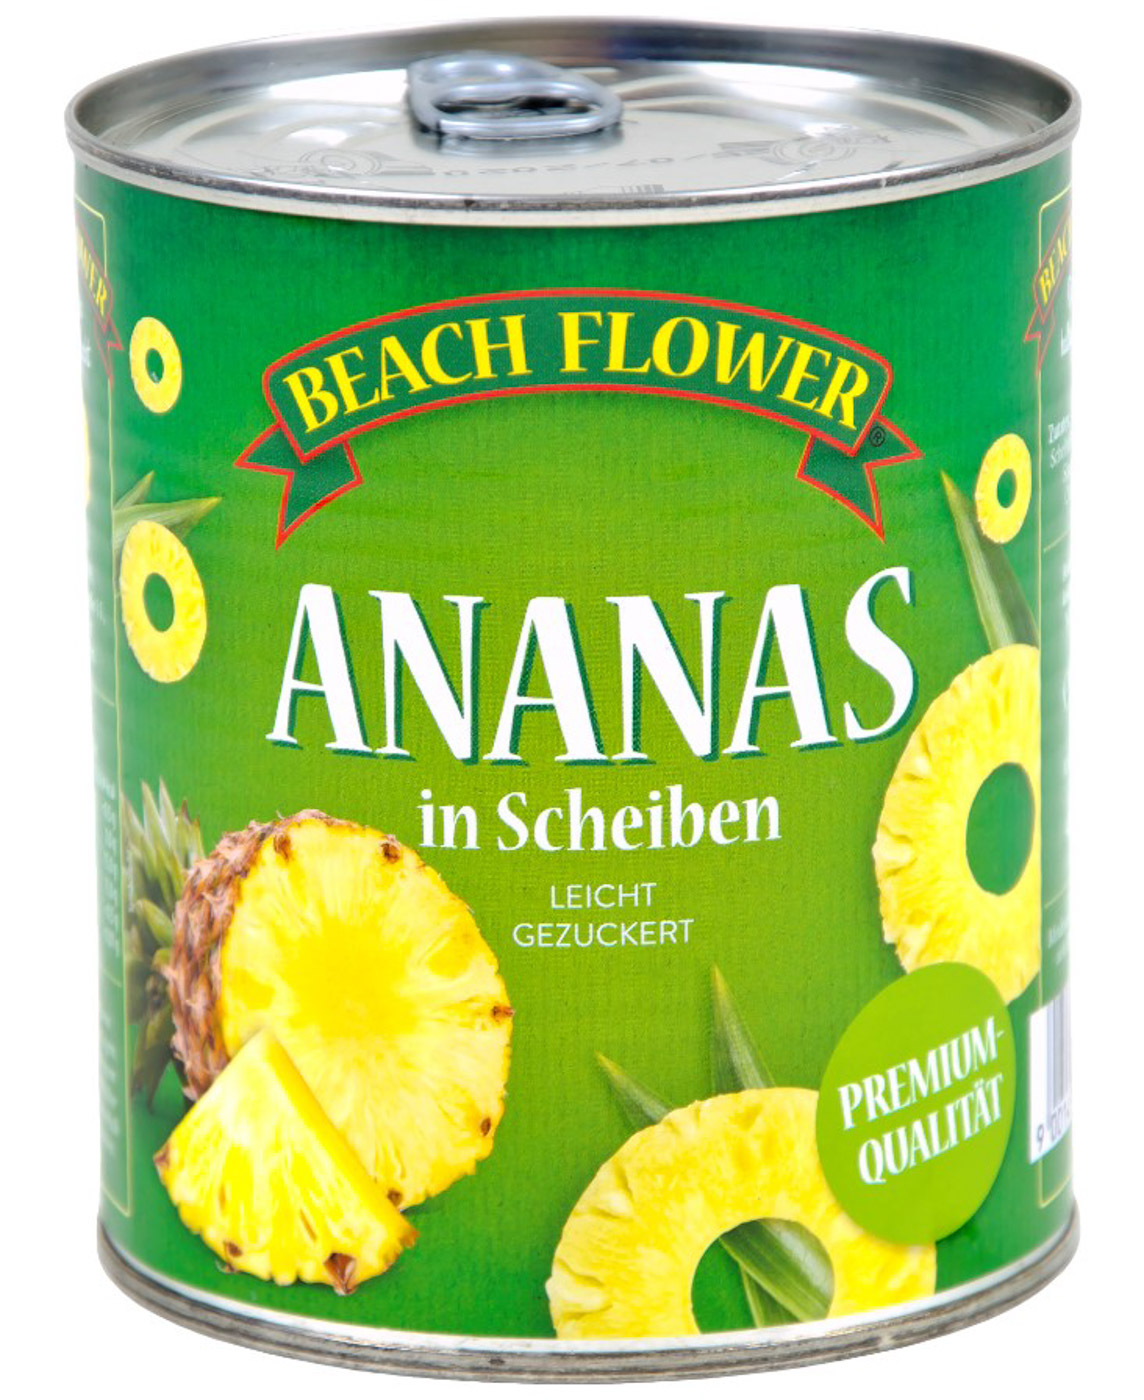 Beach Flower Ananas Scheiben Konserve 825G